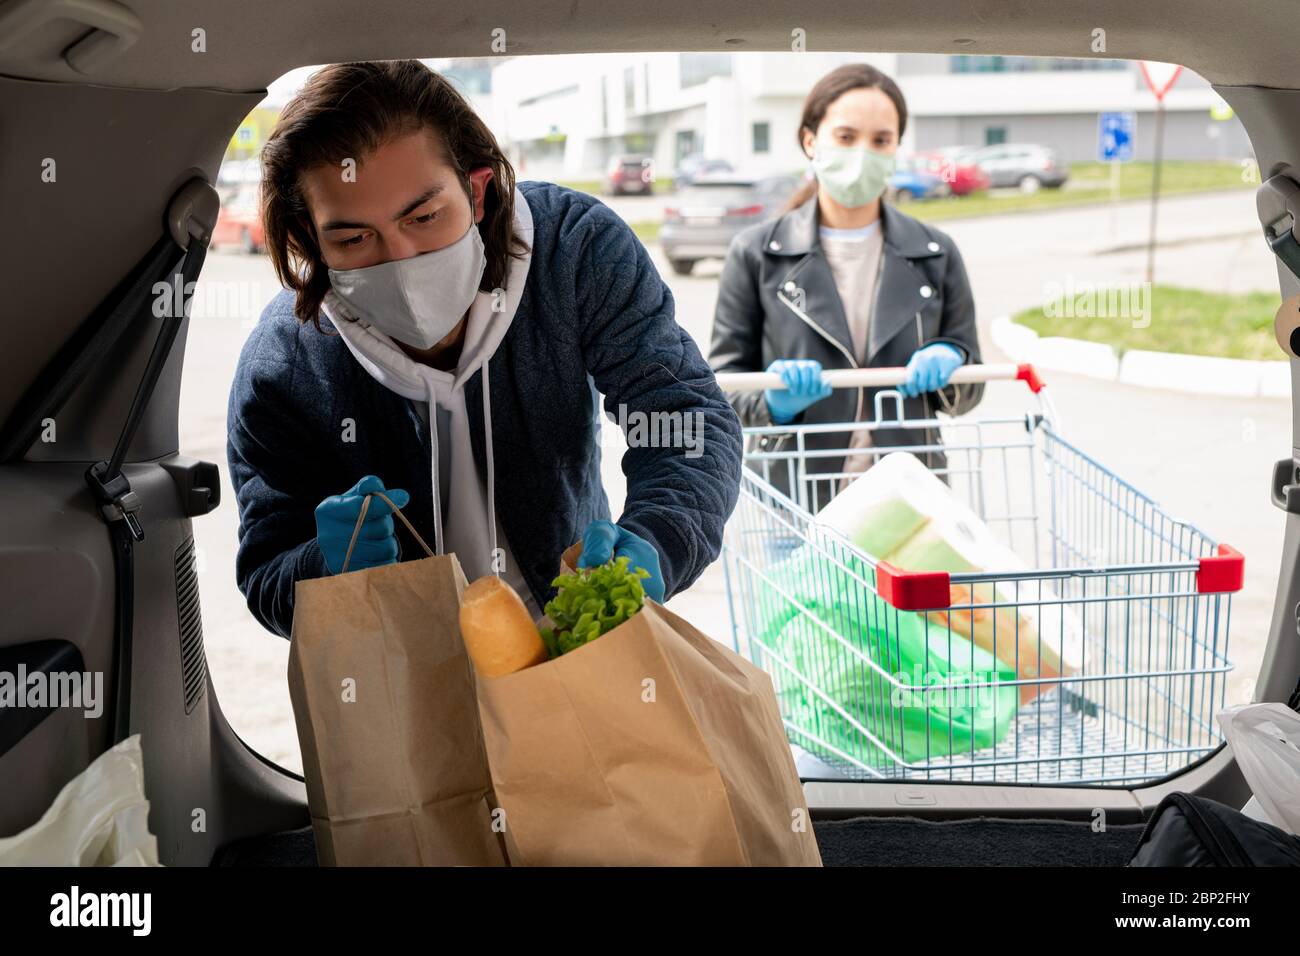 Junger Mann in Schutzhandschuhen und Maske, der Paperbags mit Lebensmitteln in den Kofferraum des Autos legt, während seine Frau mit einem Wagen in der Nähe steht Stockfoto